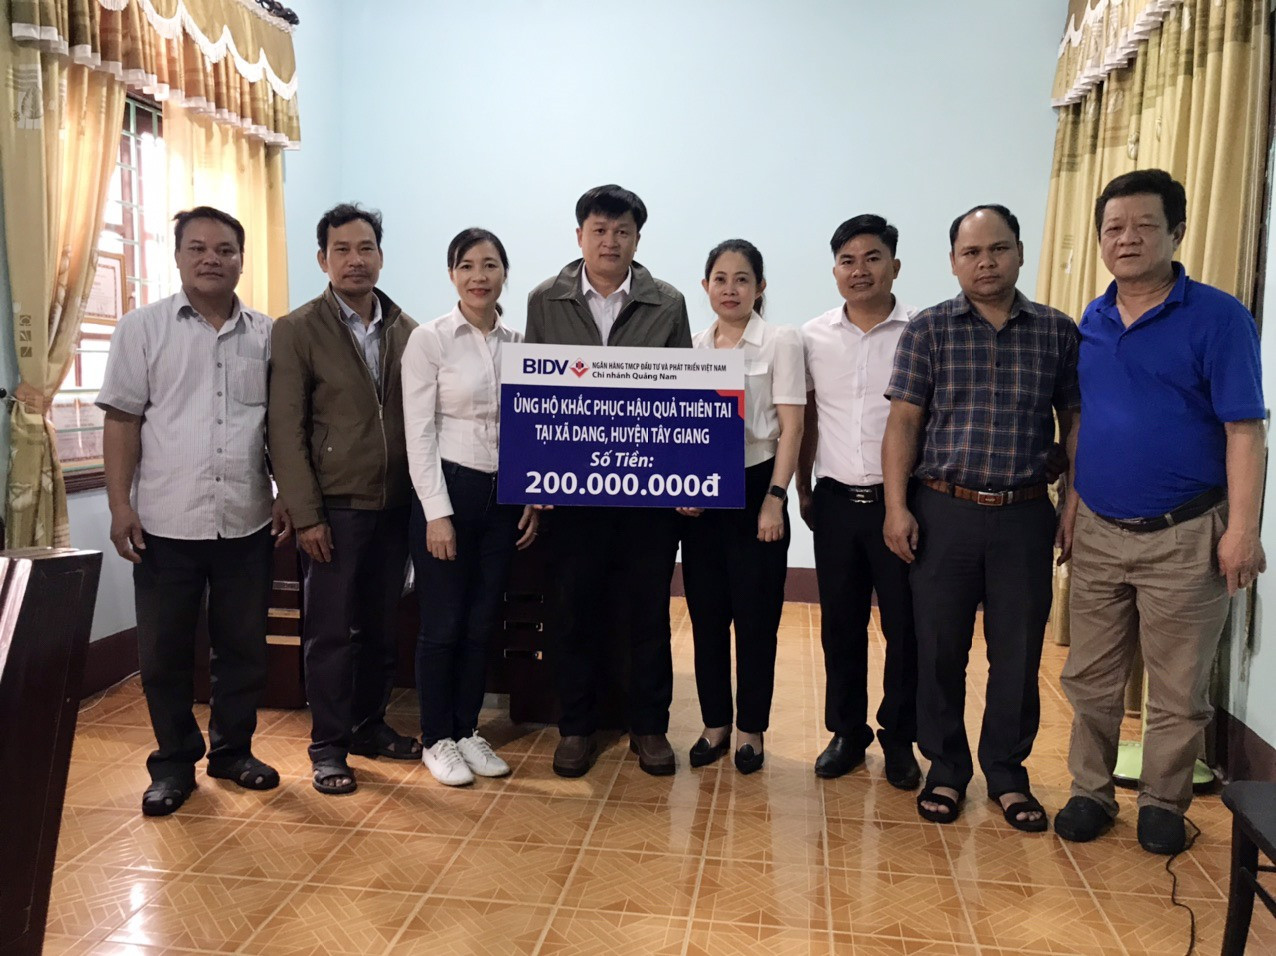 BIDV chi nhánh Quảng Nam tặng 31 suất quà trị giá 200 triệu đồng giúp người dân xã Dang (huyện Tây Giang) sửa chữa nhà ở. Ảnh: V.N